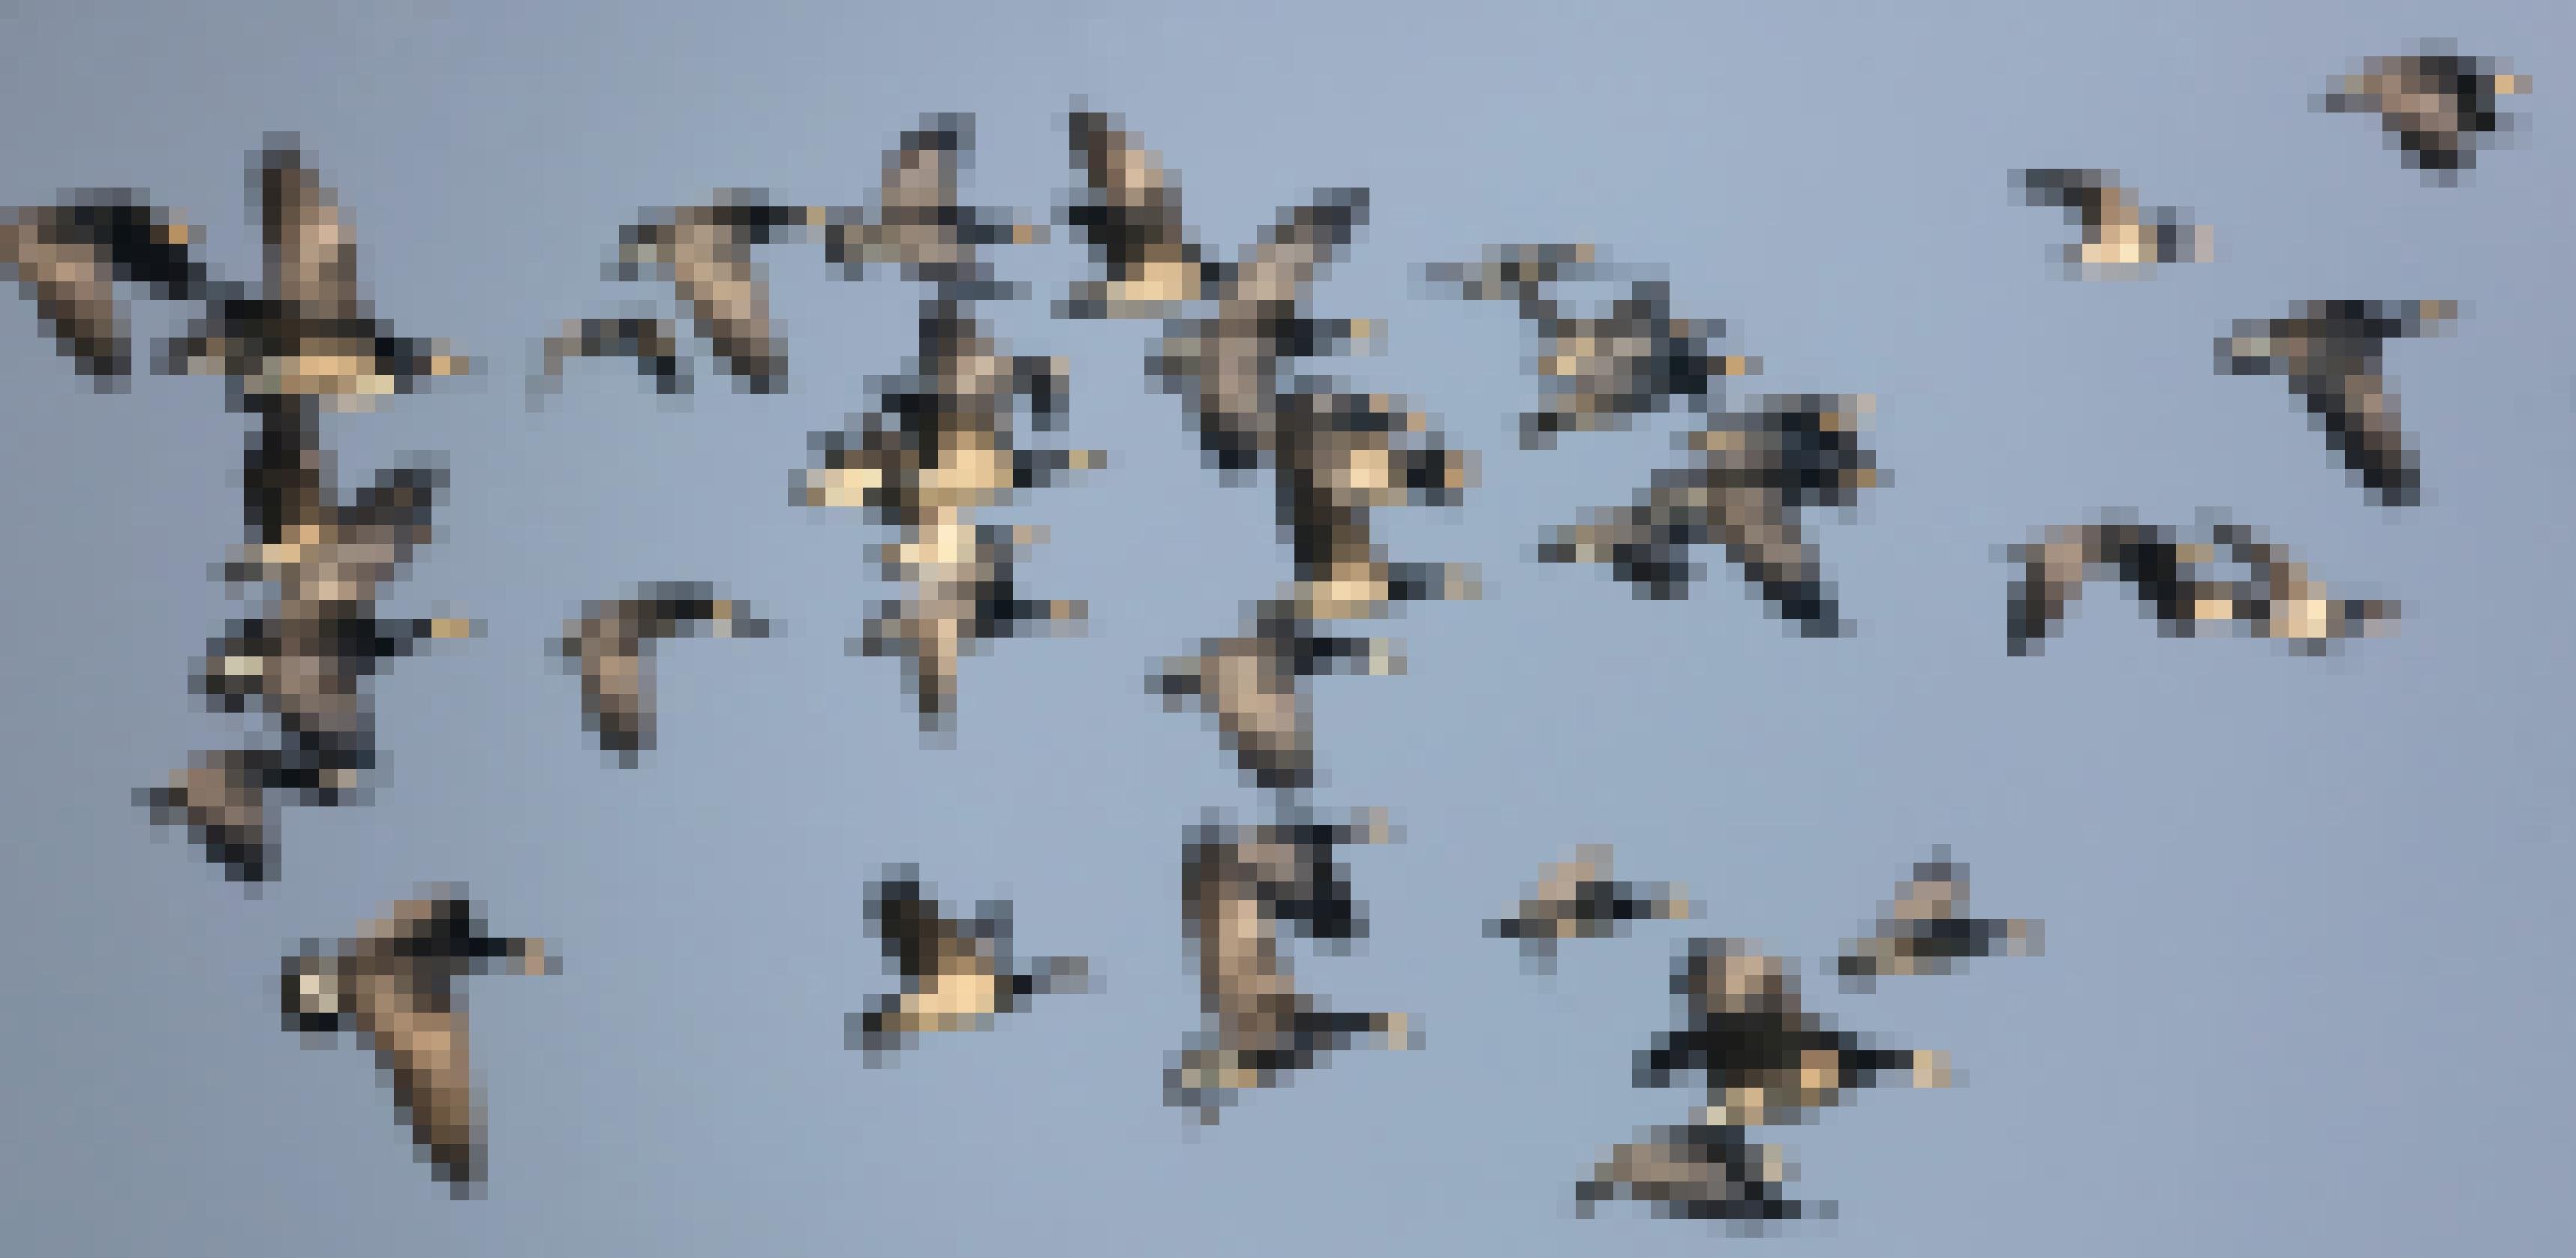 Eine Gruppe aus rund 20 Weißwangengänse fliegen von rechts nach links durch das Bild. Der Hintergrund ist blauer Himmel.